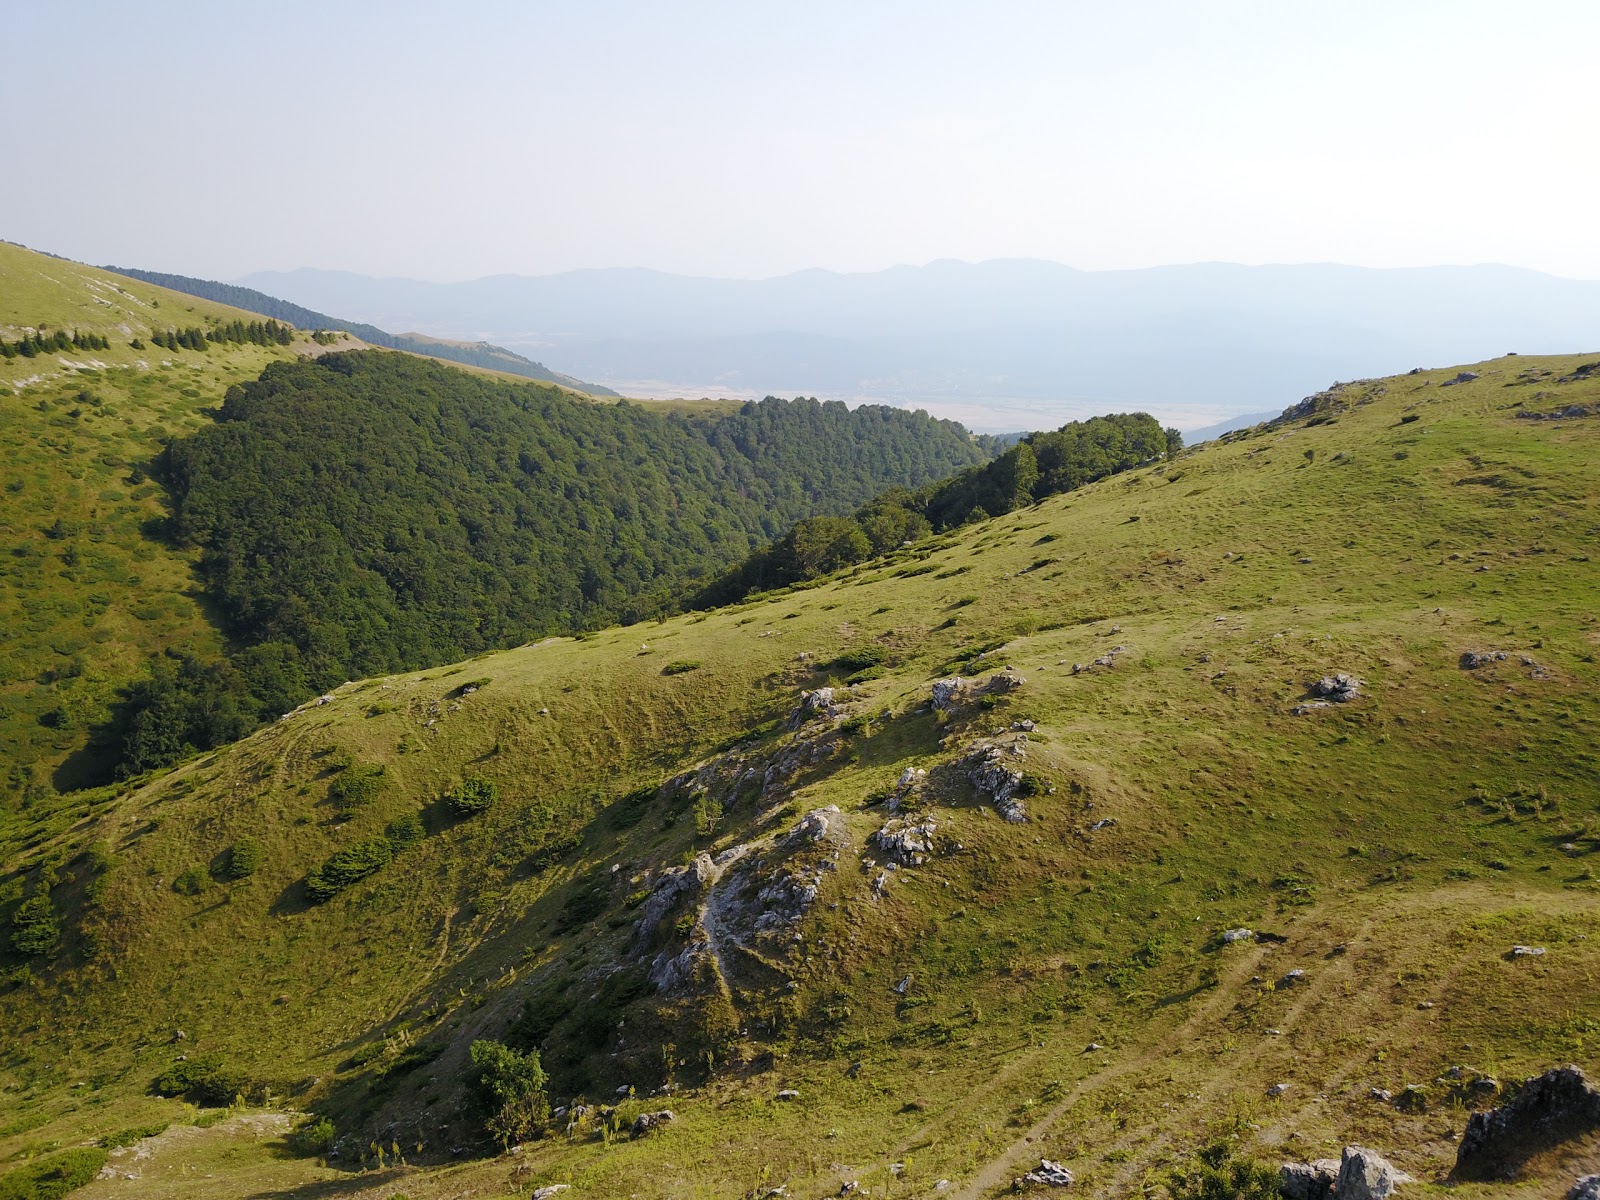 Bulgarije kent mooie bergen, maar op een onvoorbereide wandeltocht kom je voor de nodige verrassingen te staan